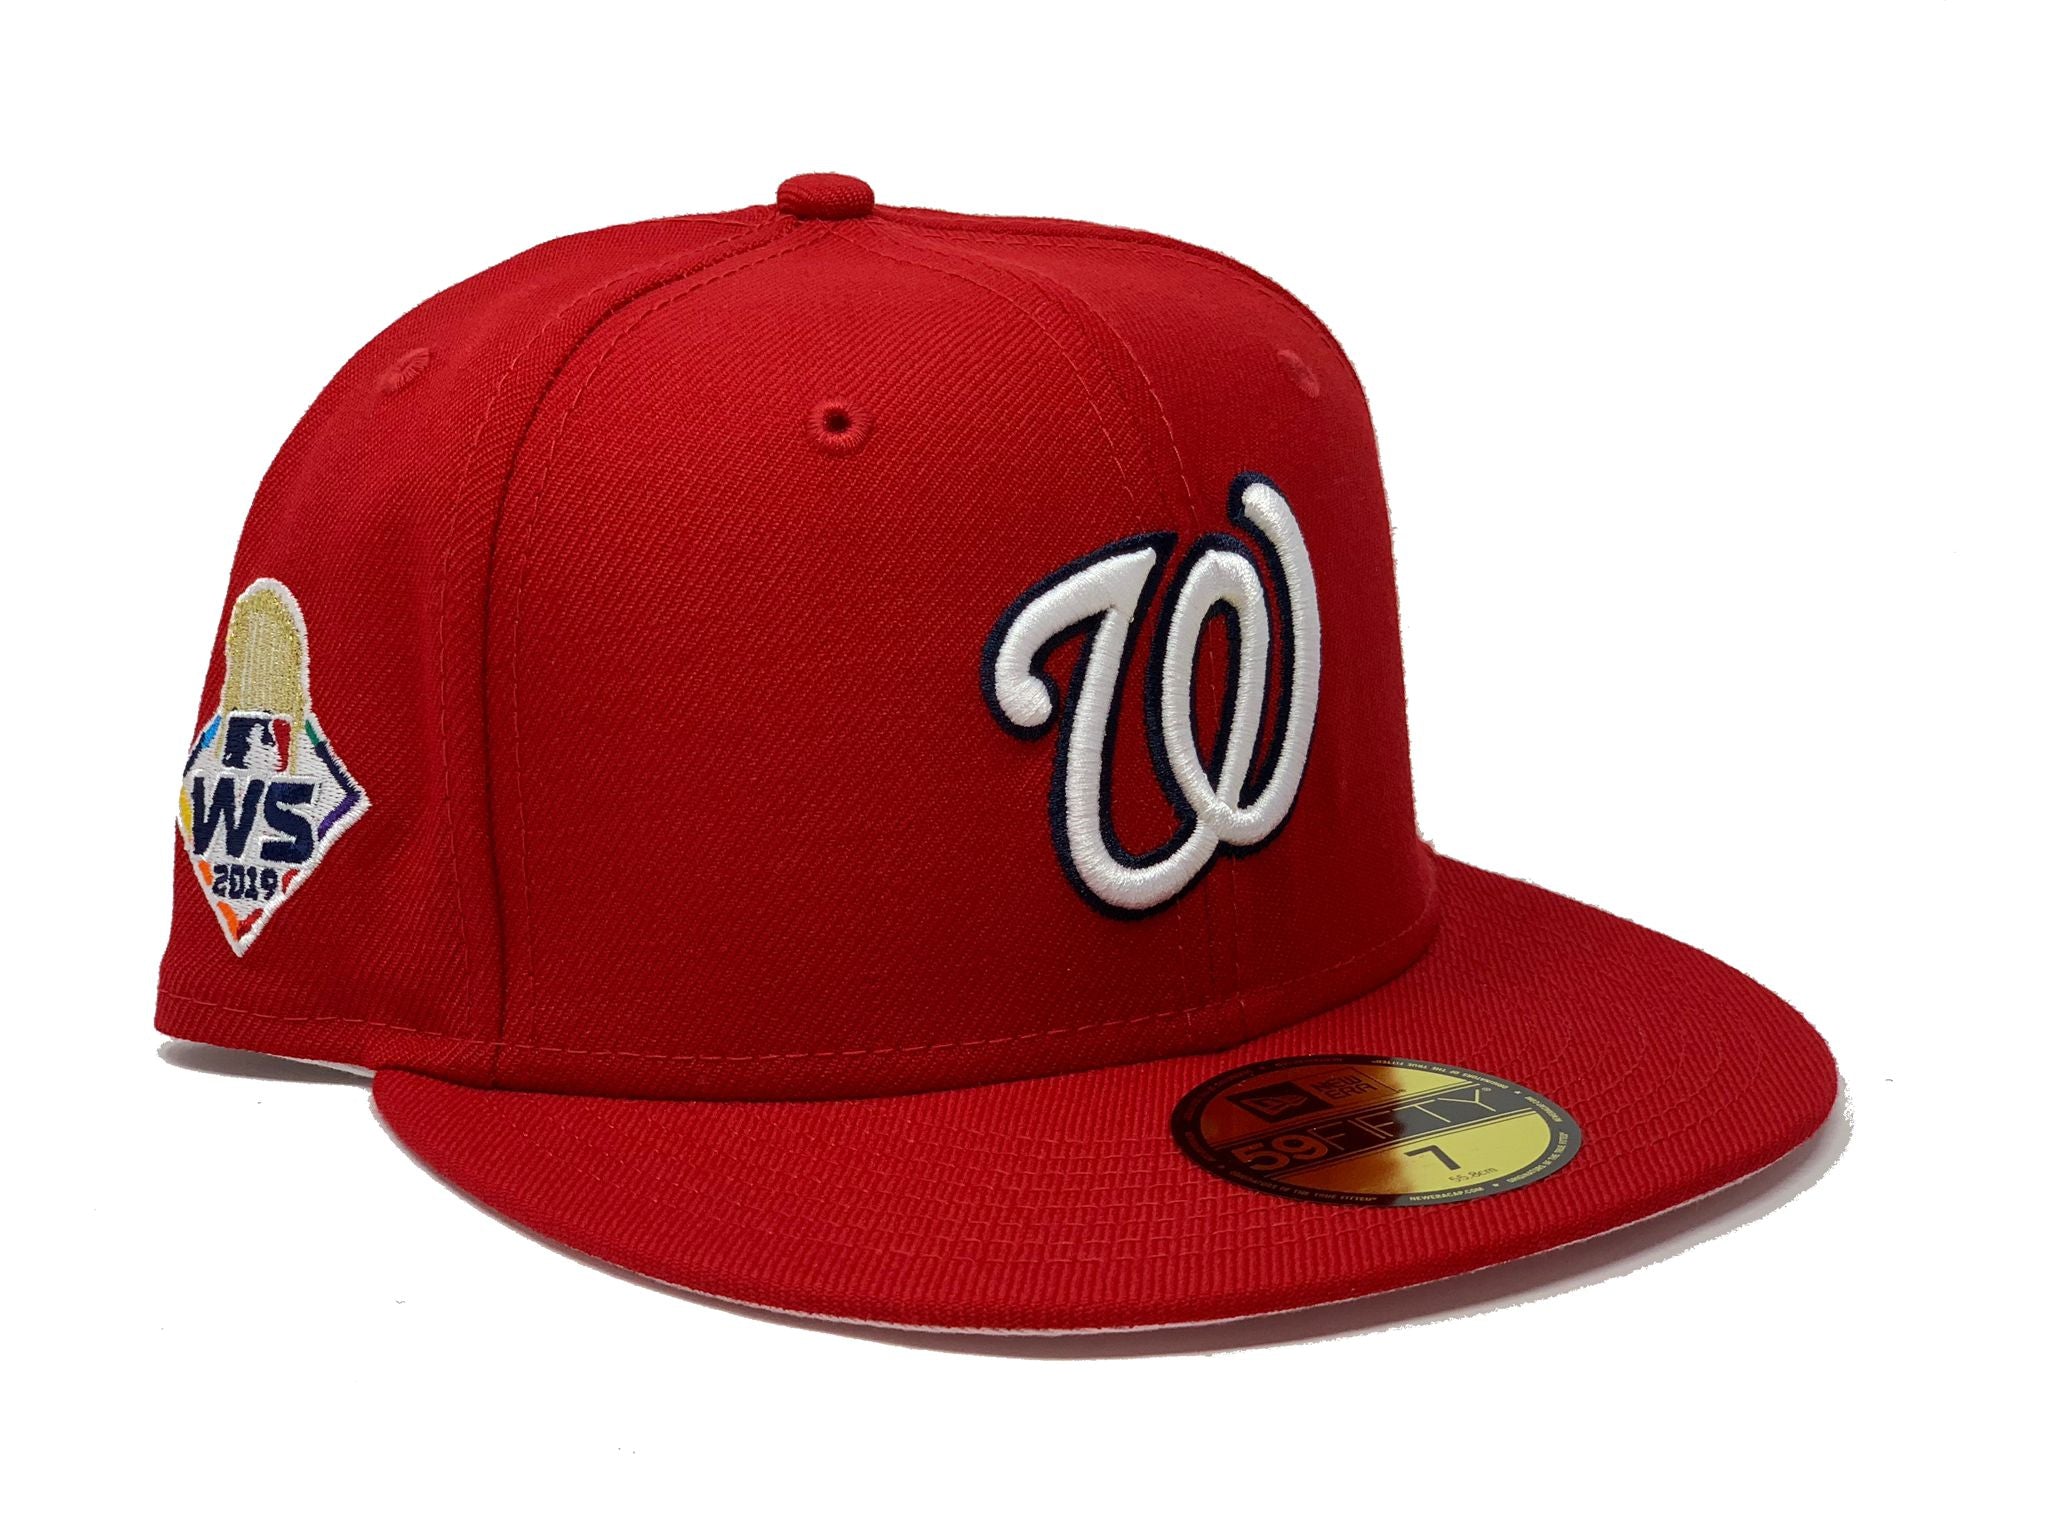 Nationals World Series shirts, hats: Check out Washington's 2019